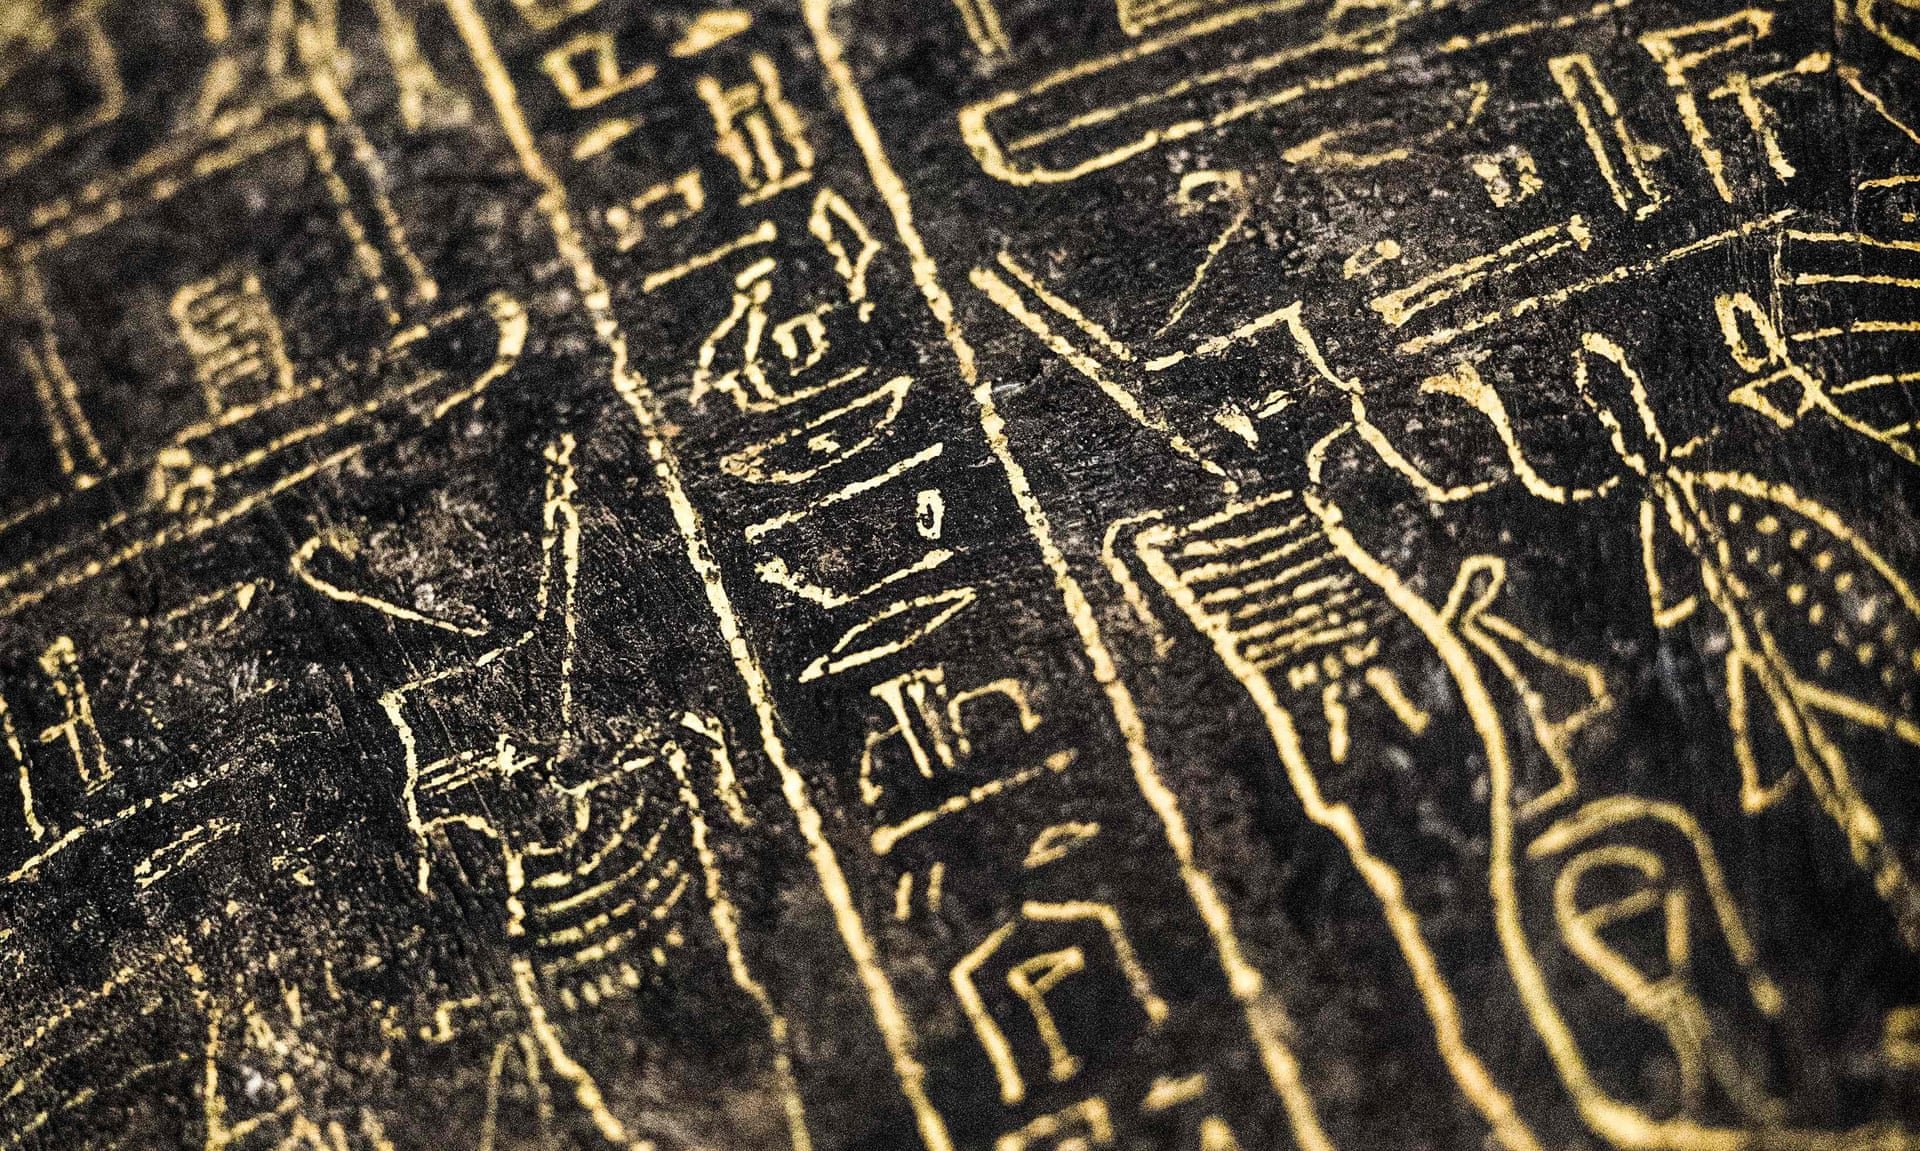 Hieróglifos